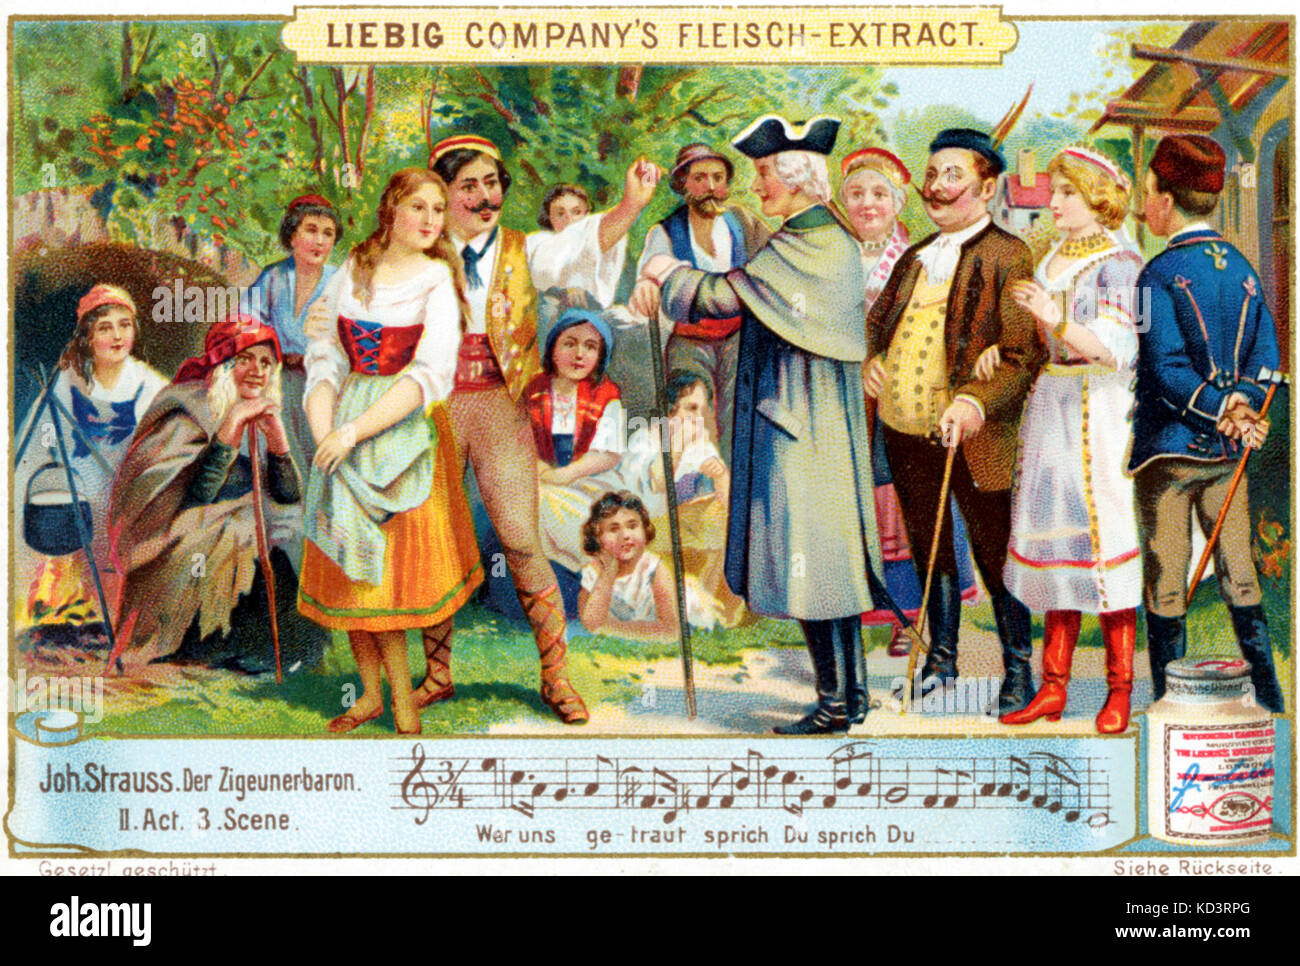 Johann Strauss II "Zigeunerbaron", Act II/III Werbung für's Fleisch-Extract Liebig Unternehmen. Der oesterreichische Komponist, Dirigent und Geiger (1825-1899) Stockfoto